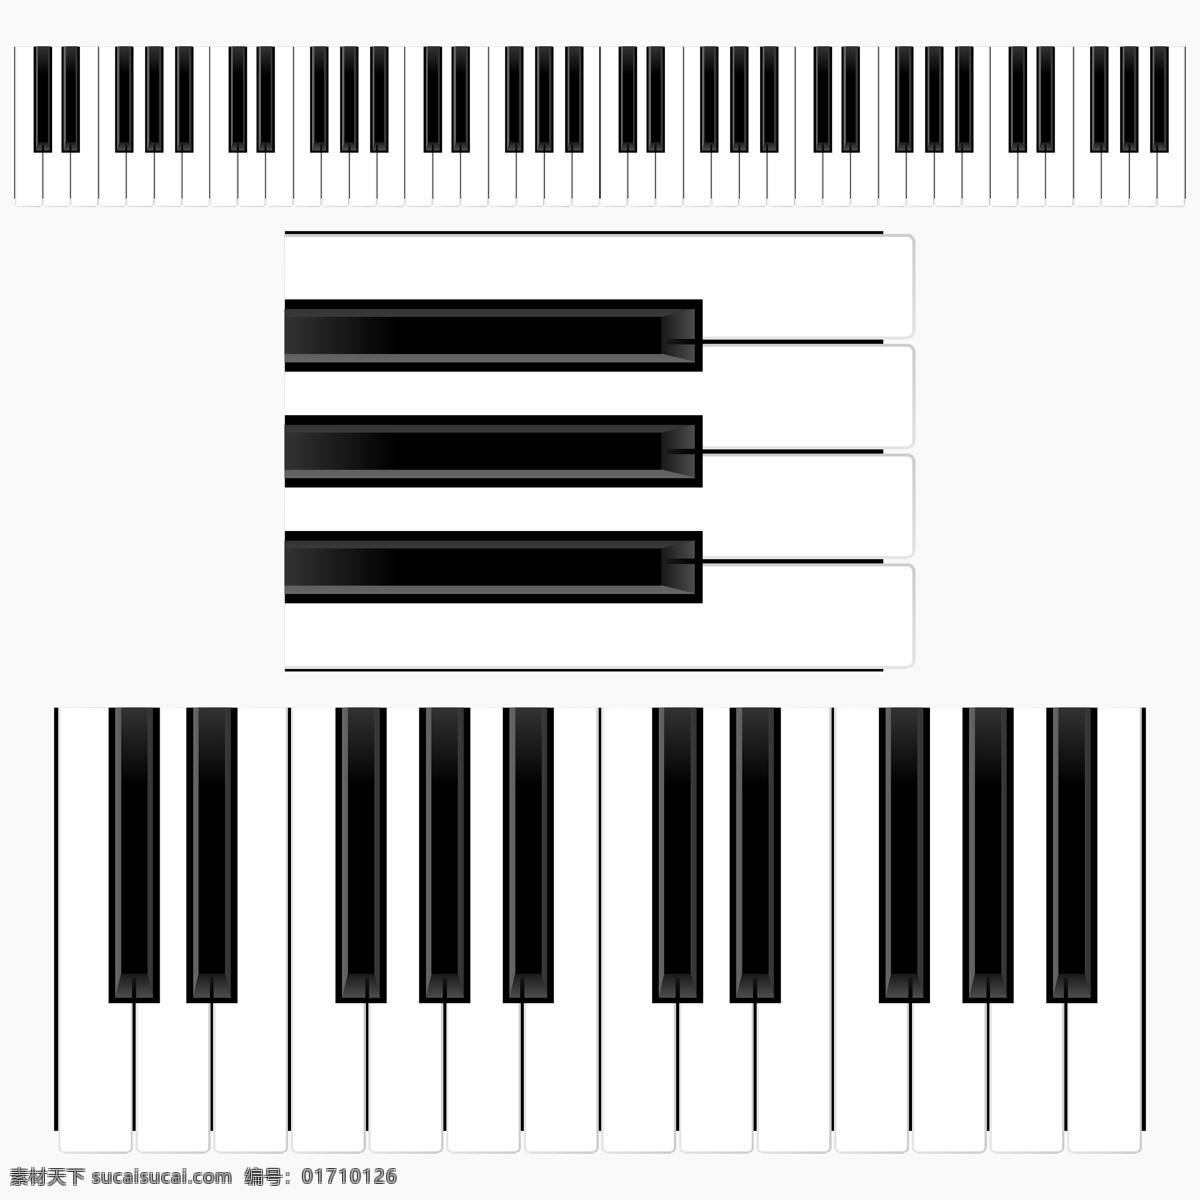 琴键 钢琴 黑白 键盘 乐器 生活百科 生活用品 旋律 音乐 矢量 琴键矢量素材 琴键模板下载 psd源文件